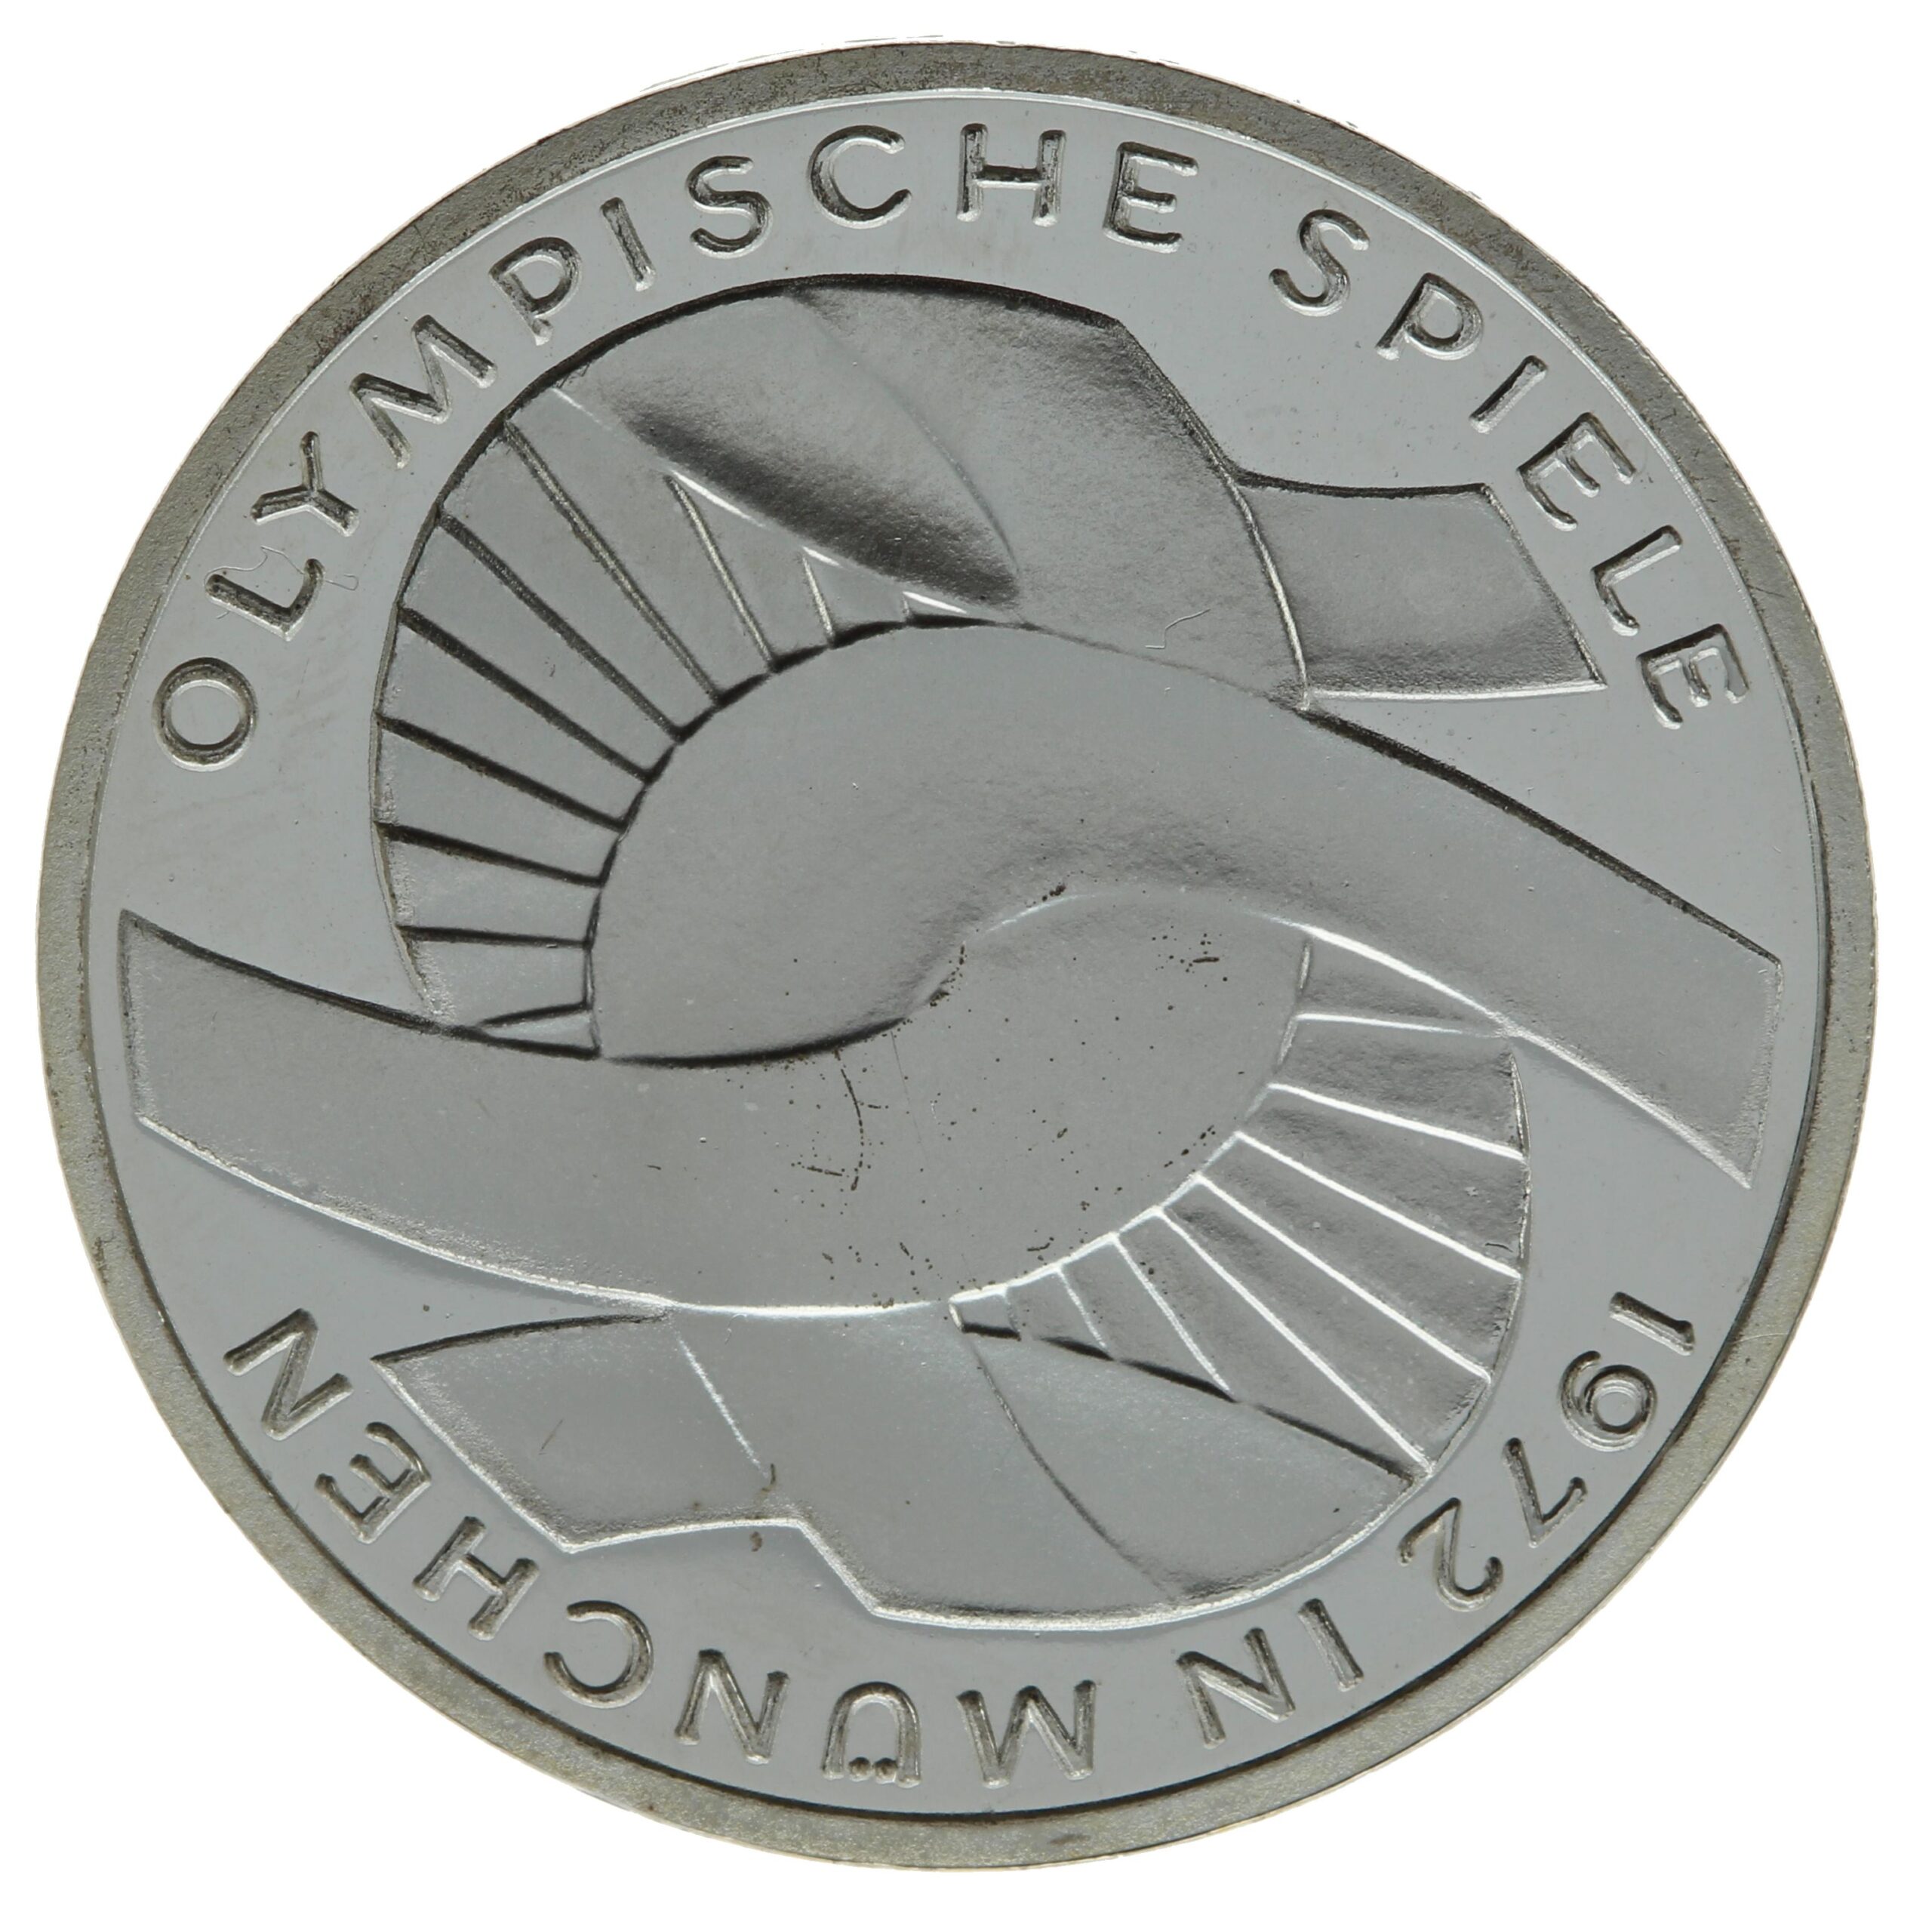 DE 10 Deutsche Mark 1972 F